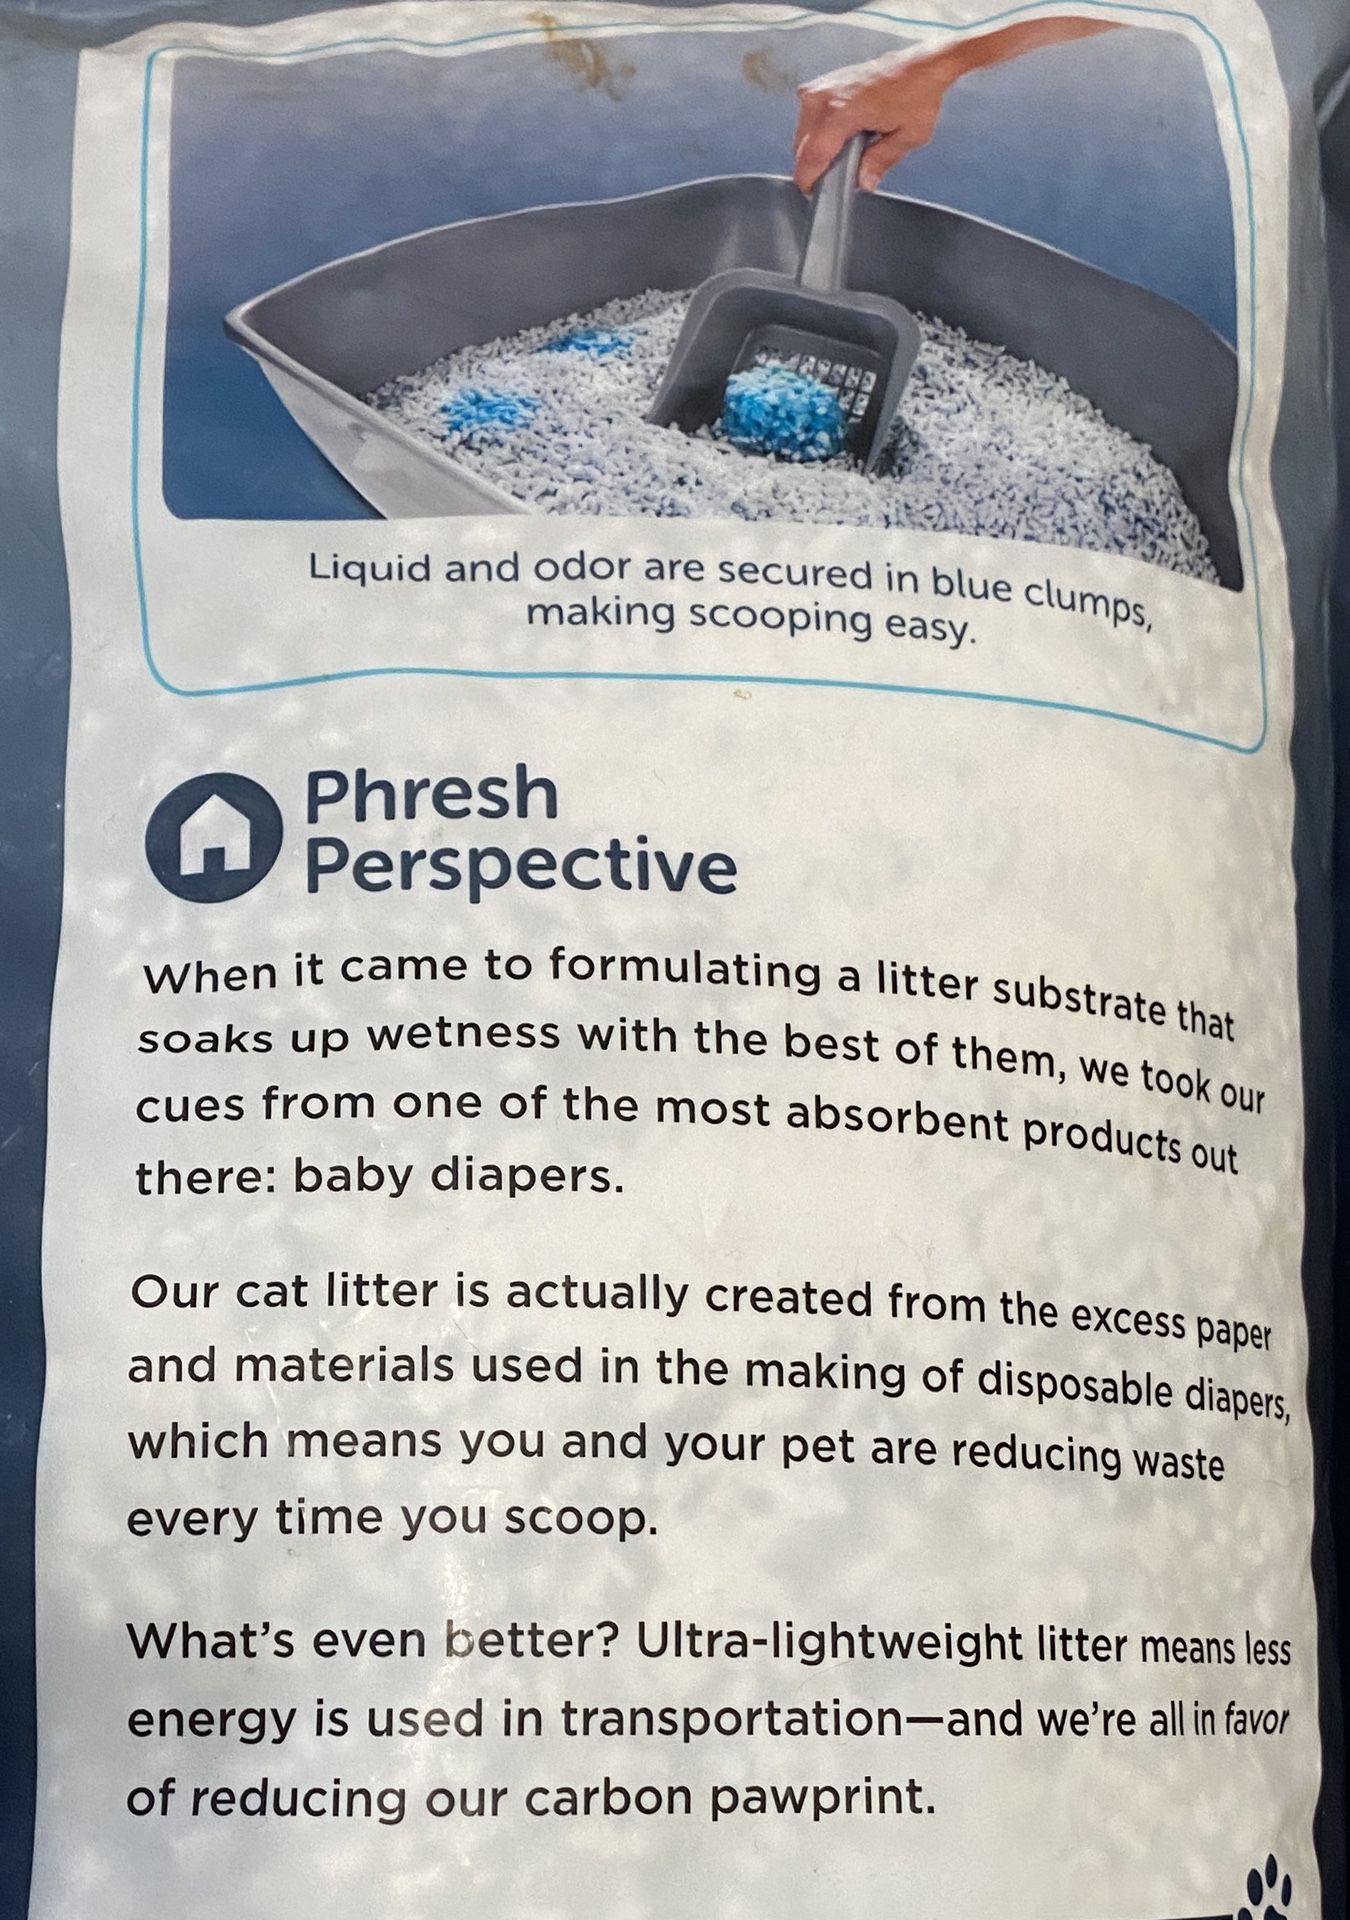 Clumping Paper Cat Litter 